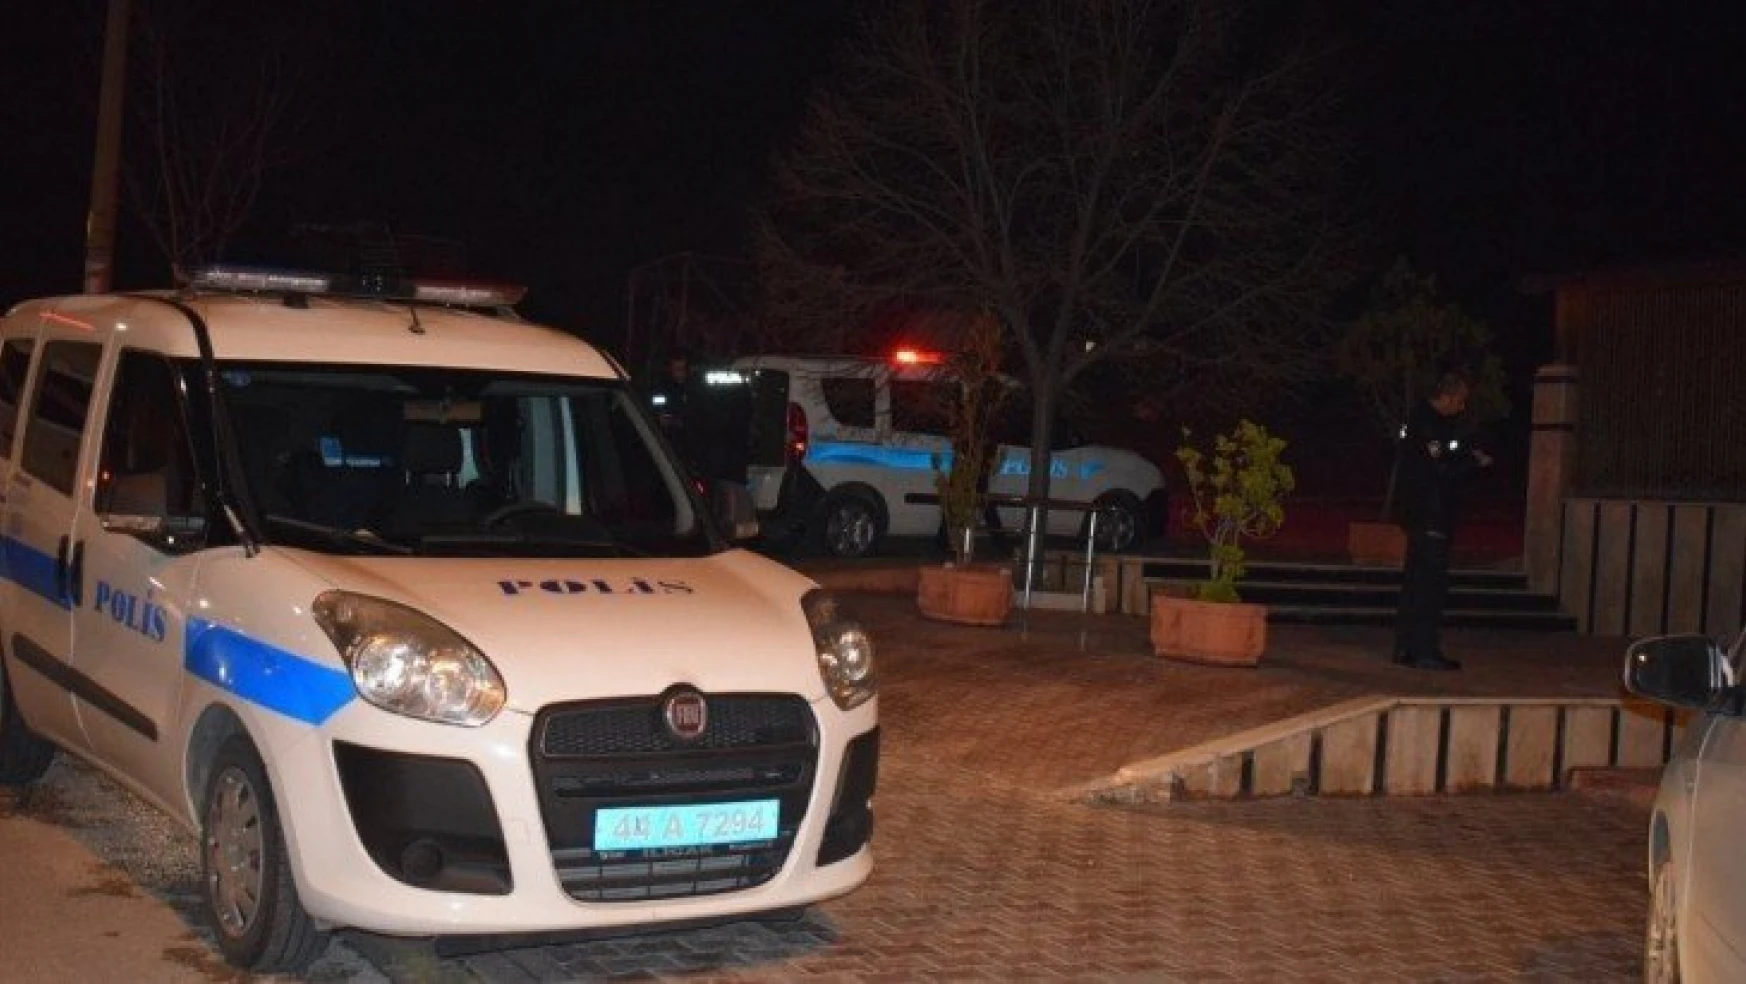 Malatya'da Yurttan kaçan 7 kayıp kız bulundu